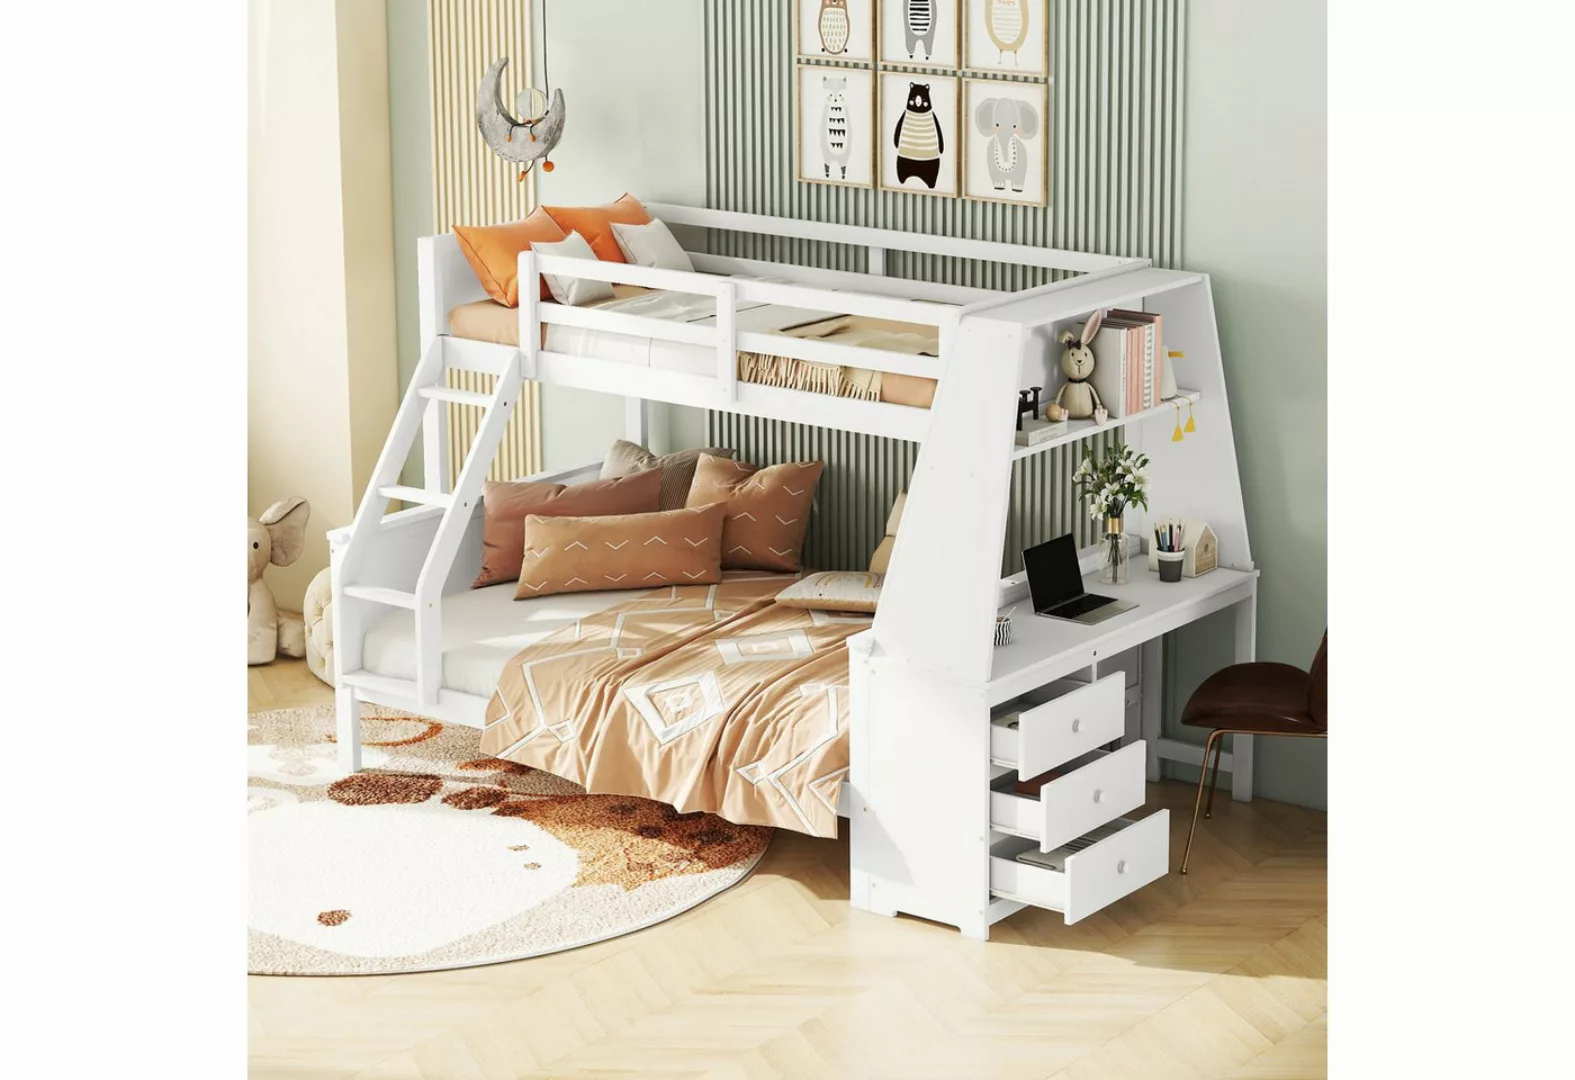 REDOM Etagenbett Kinderbett, ausgestattet mit Tisch, großer Stauraum, hohes günstig online kaufen